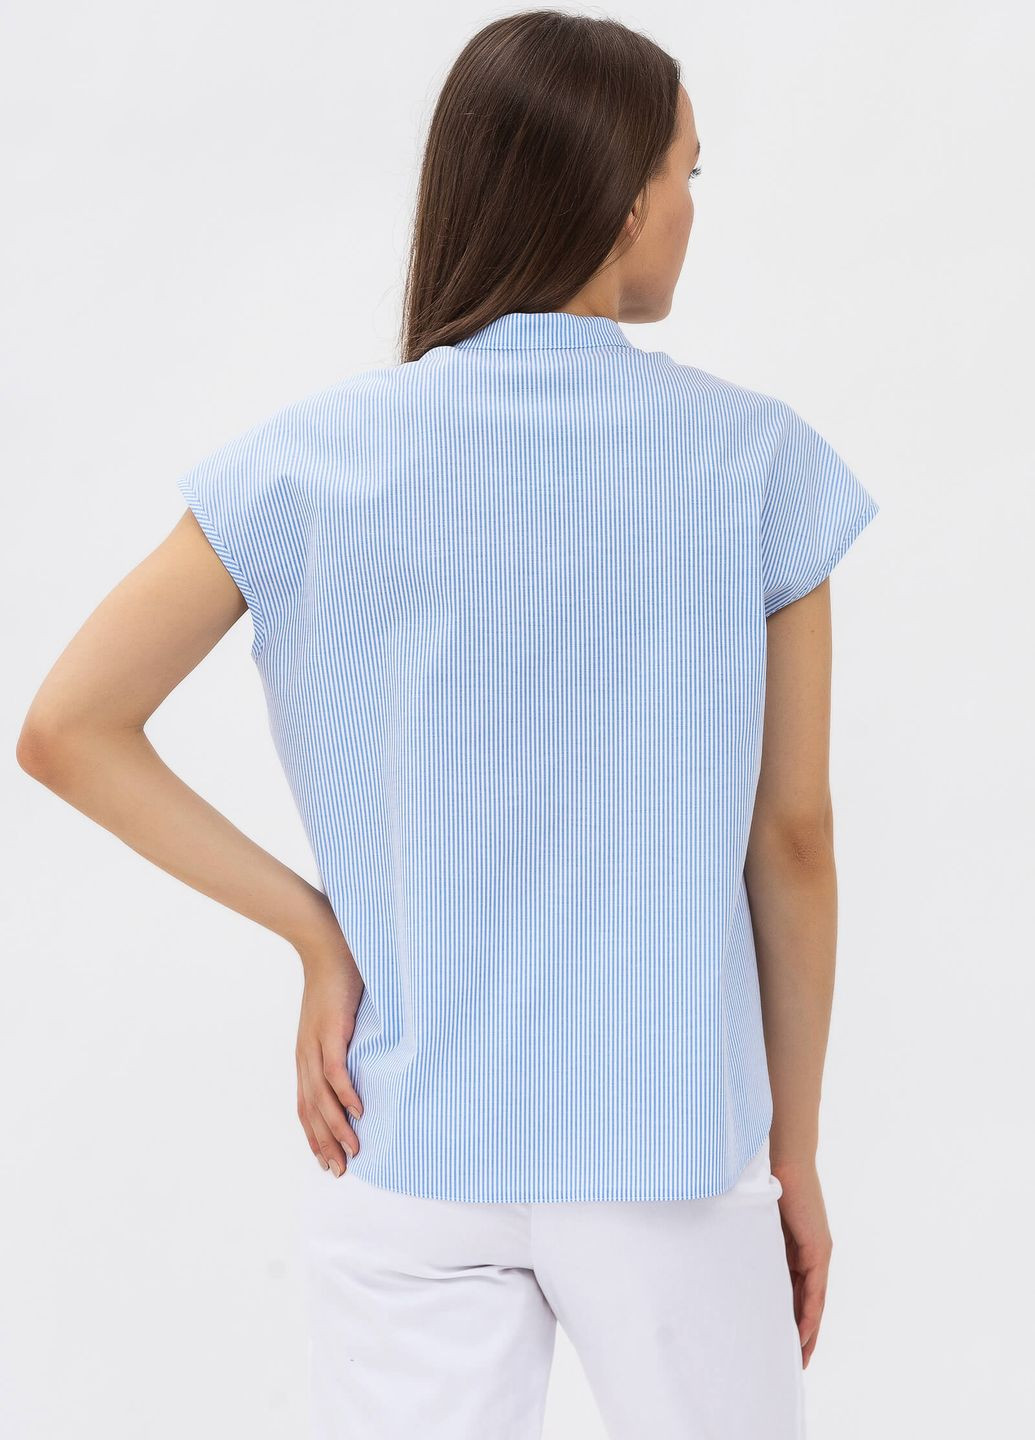 Синяя демисезонная блуза Lesia Абигел 03